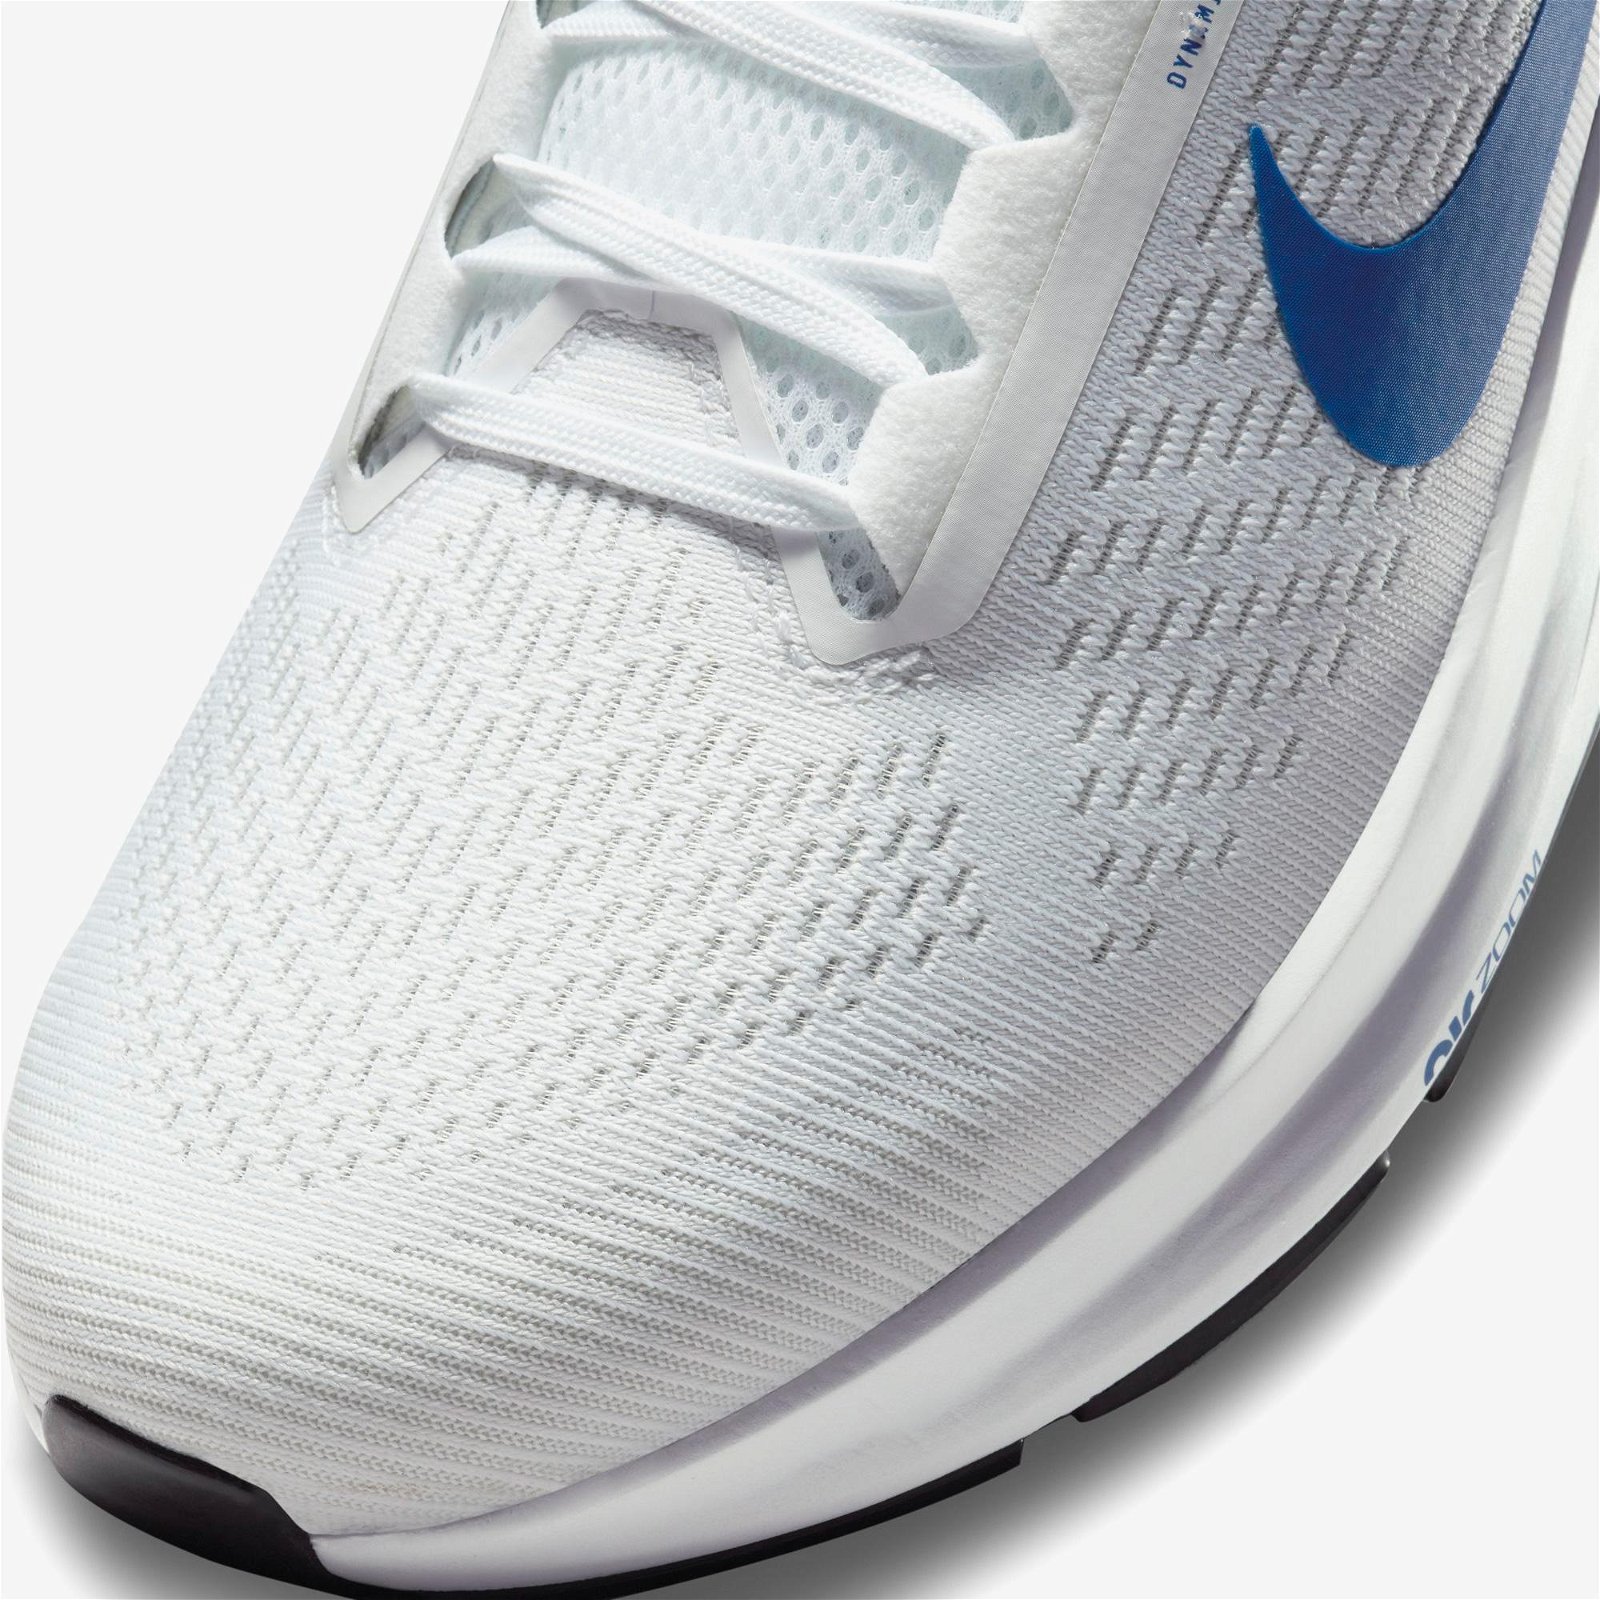 Nike Air Zoom Structure 24 Erkek Beyaz-Mavi Spor Ayakkabı